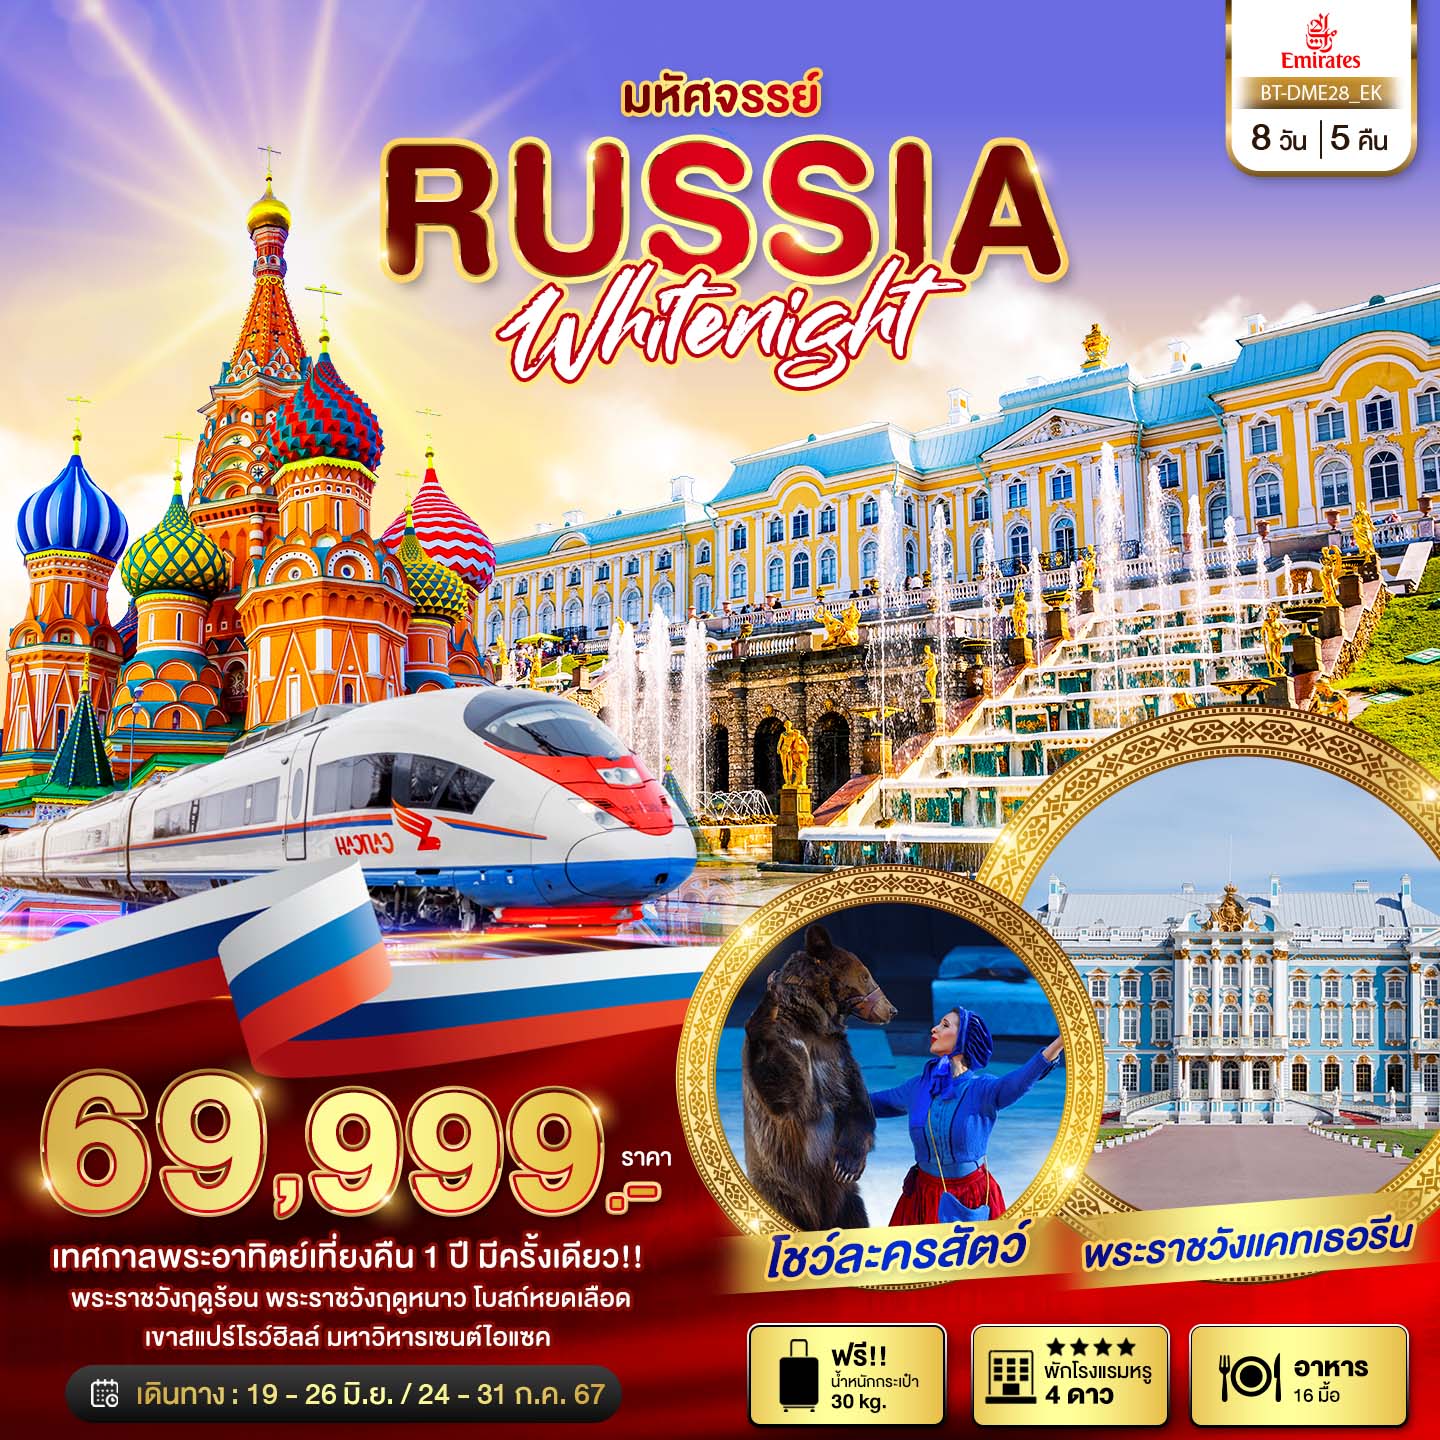 ทัวร์รัสเซีย มหัศจรรย์...รัสเซีย มอสโคว เซนต์ปีเตอร์เบิร์ก เทศกาลพระอาทิตย์เที่ยงคืน  8วัน 5คืน EK